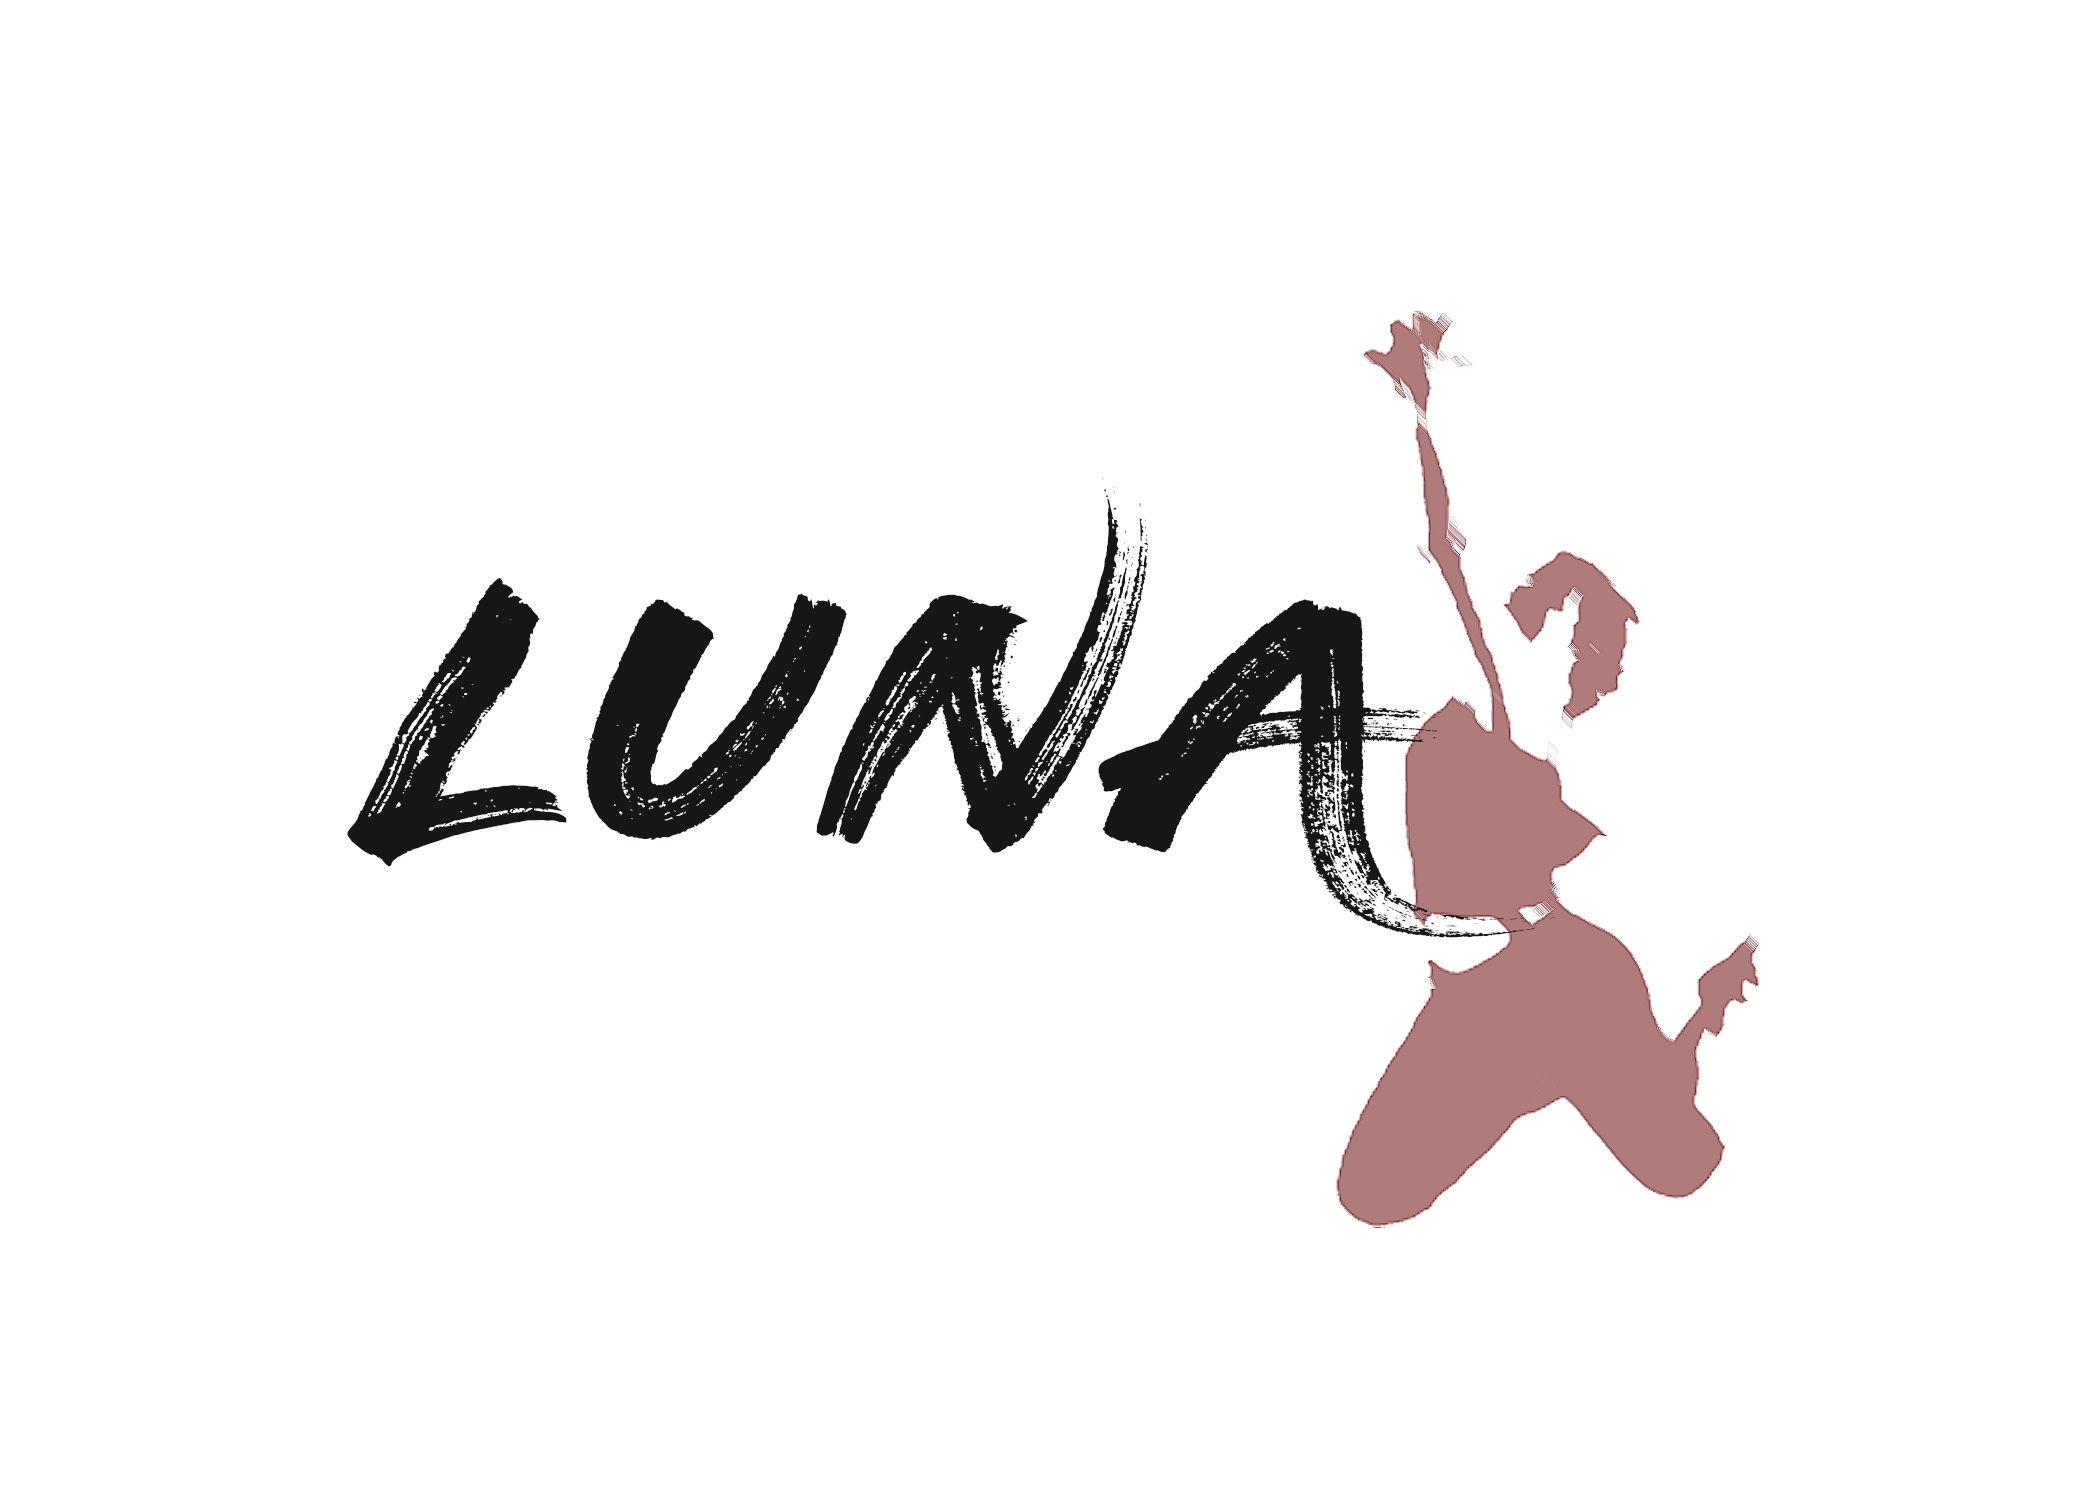 Luna logo